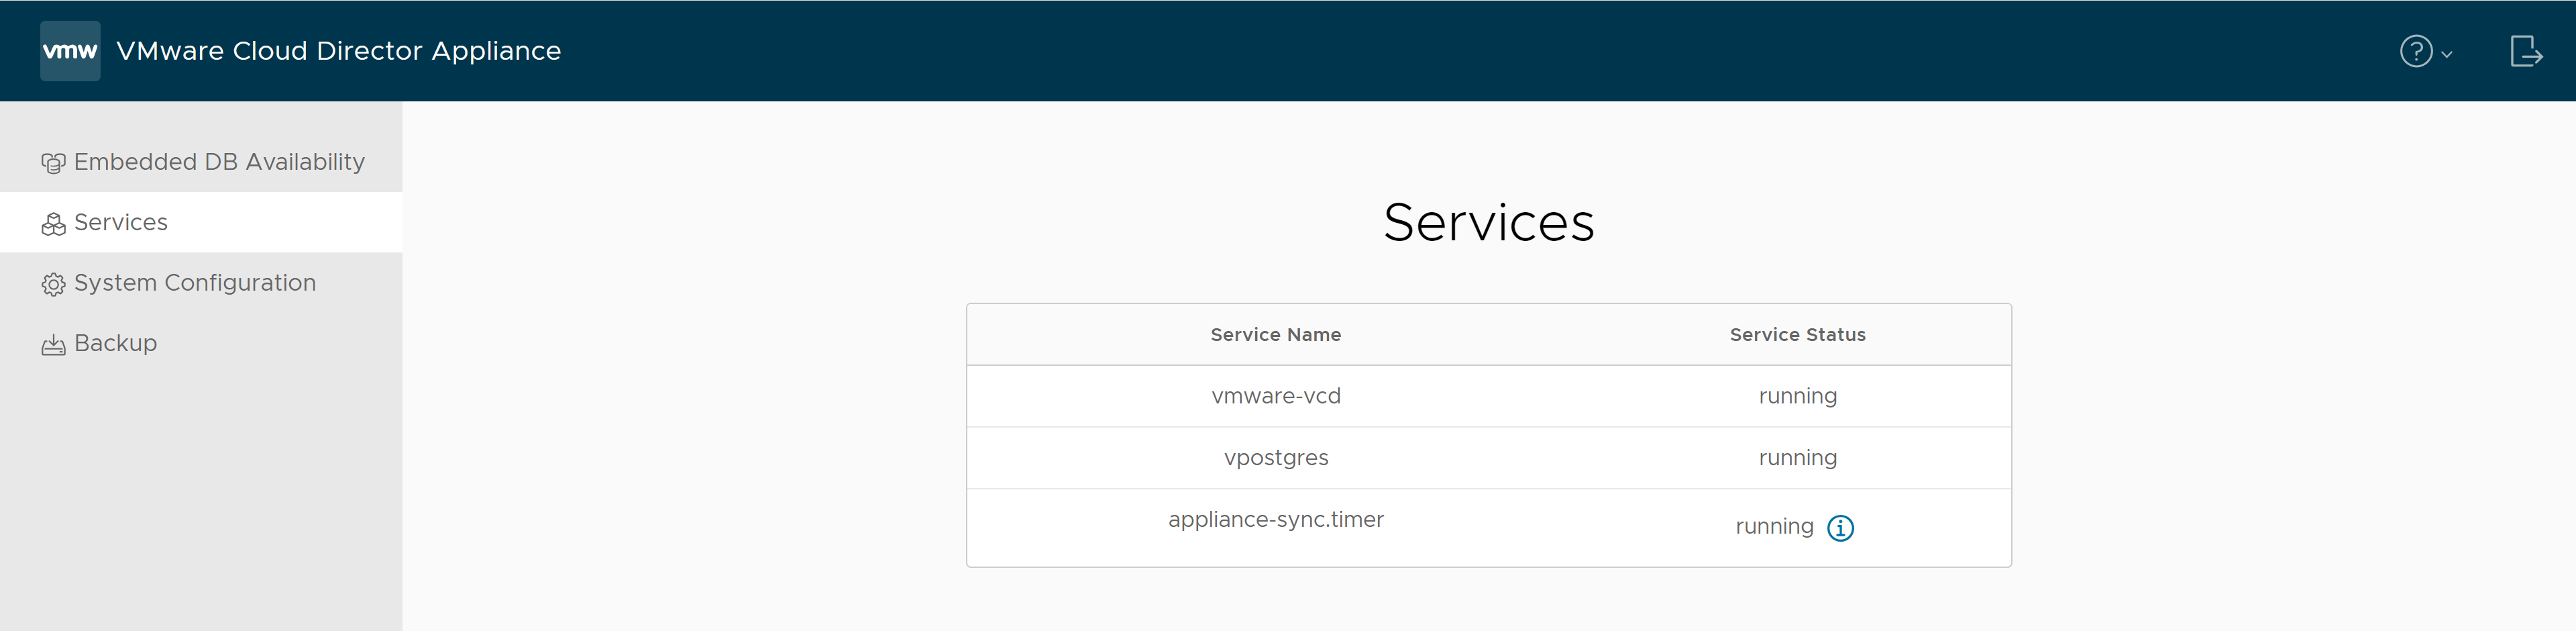 Na guia Serviços da interface de usuário de gerenciamento de dispositivos do VMware Cloud Director, você pode encontrar os nomes dos serviços e seus status.